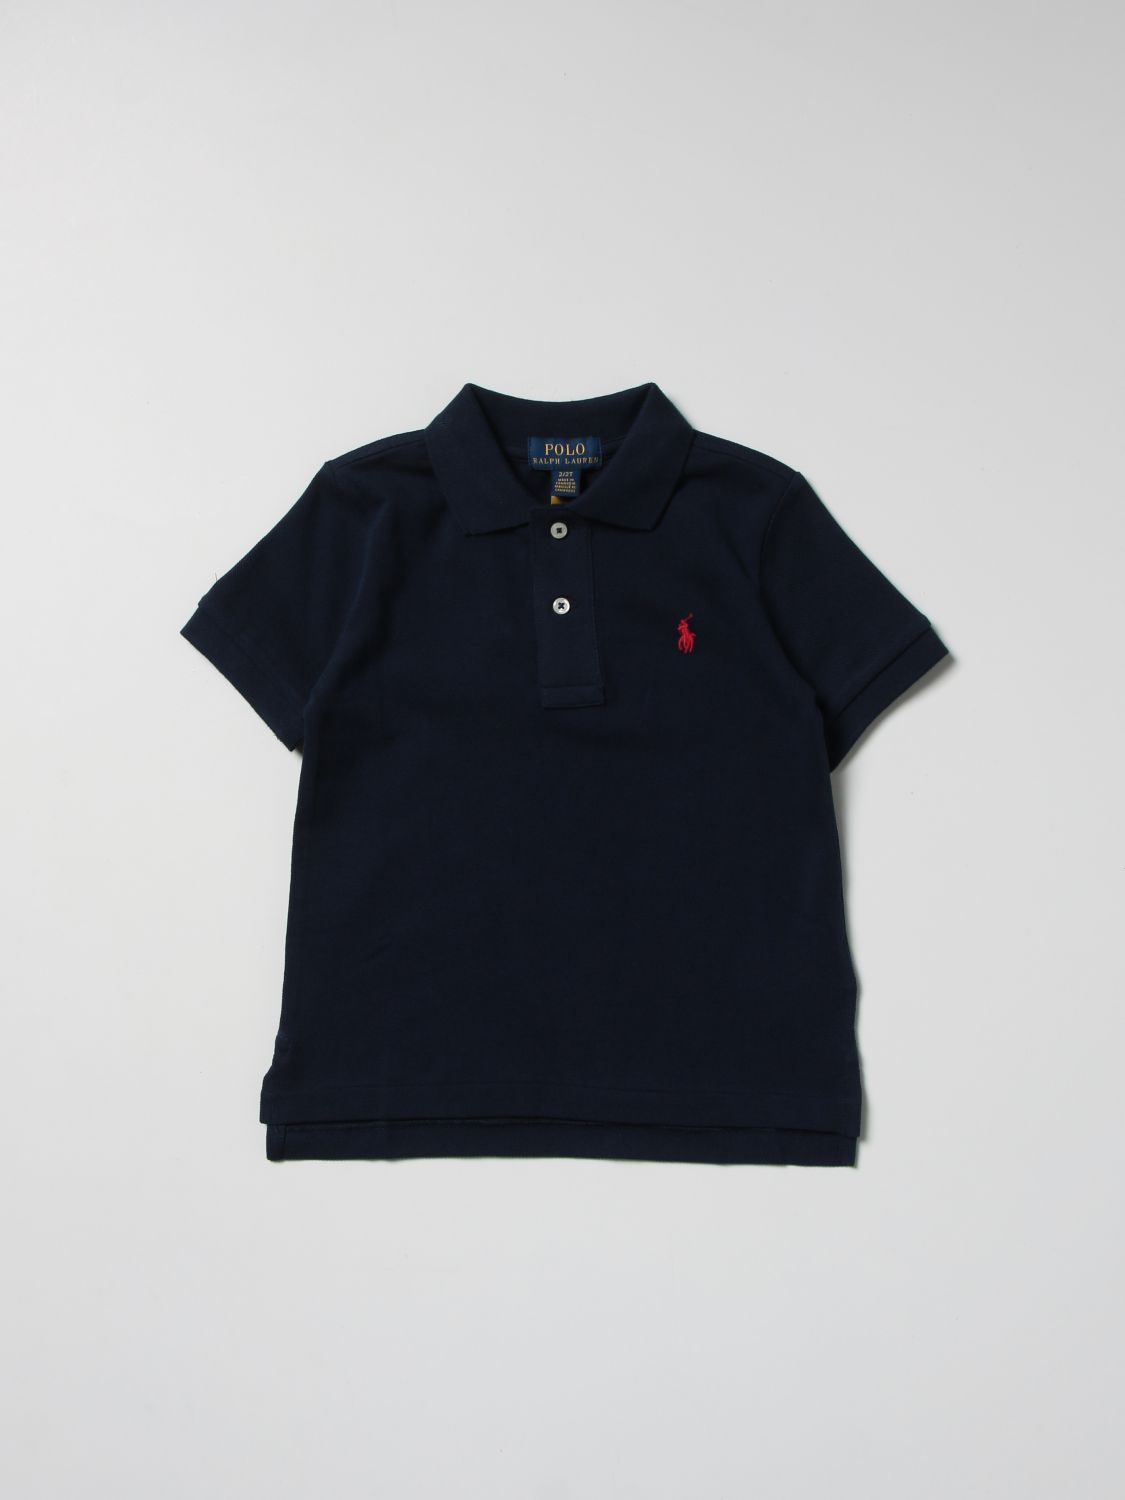 ポロシャツ ポロラルフローレン: ポロシャツ Polo Ralph Lauren 男の子 ネイビー 1